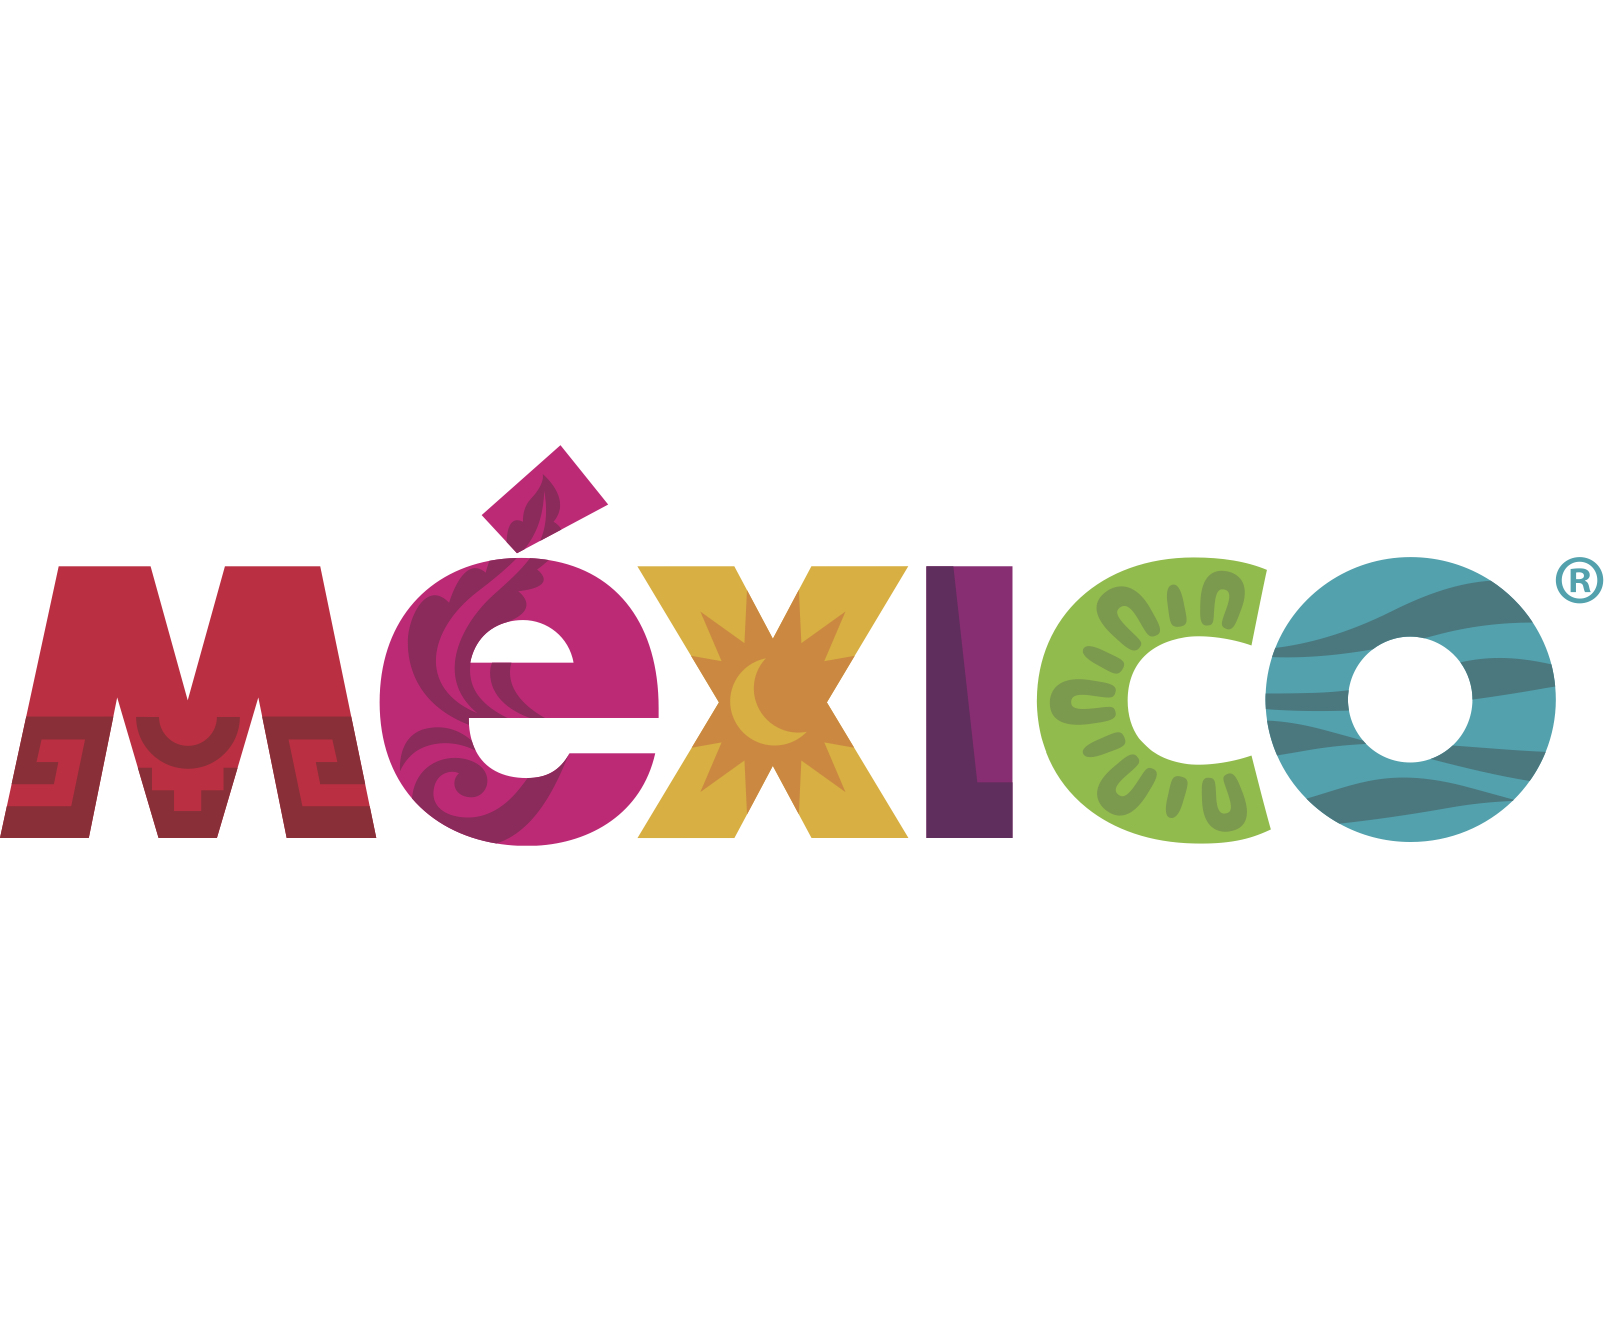 México, marca turística del país es un isologo, en el cual cada letra tiene un color, diseño y significado distinto que representa la cultura mexicana.